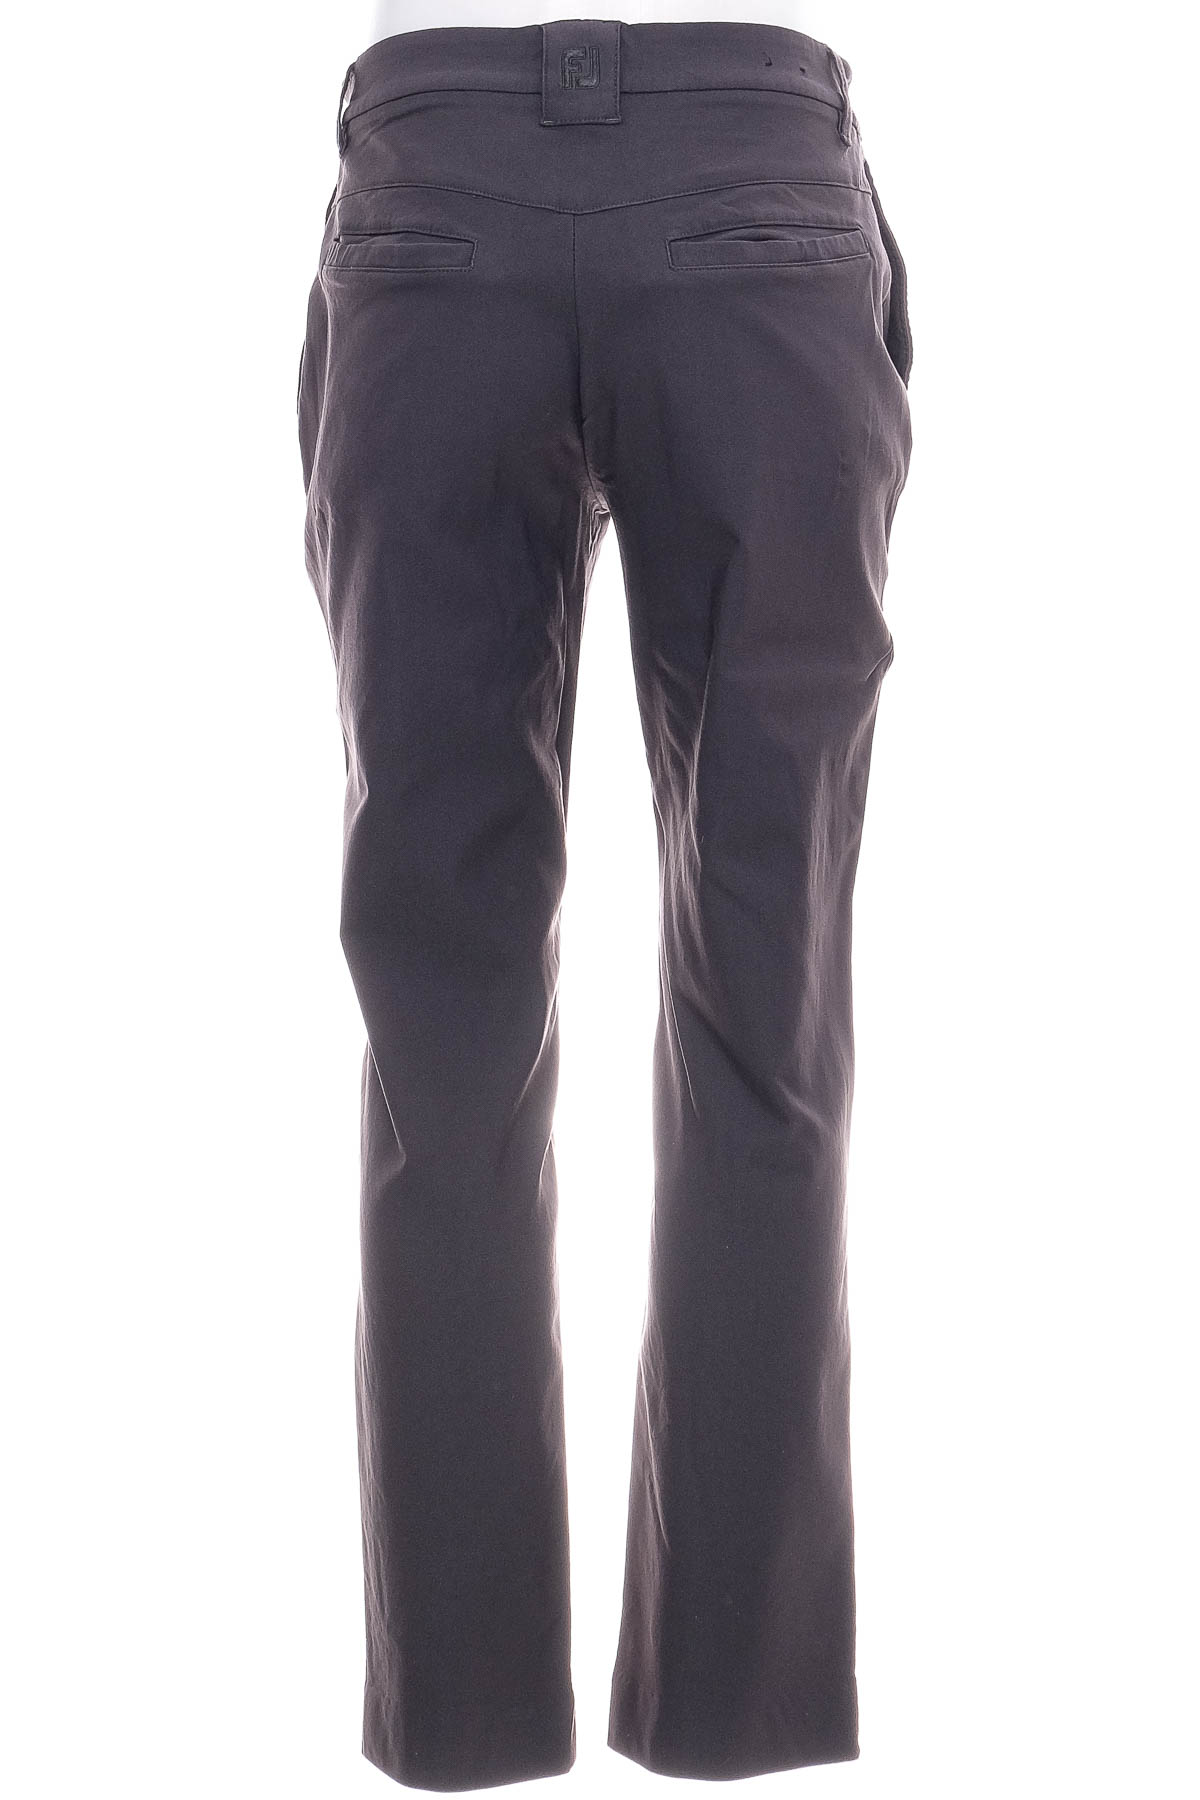 Men's trousers - FJ - 0